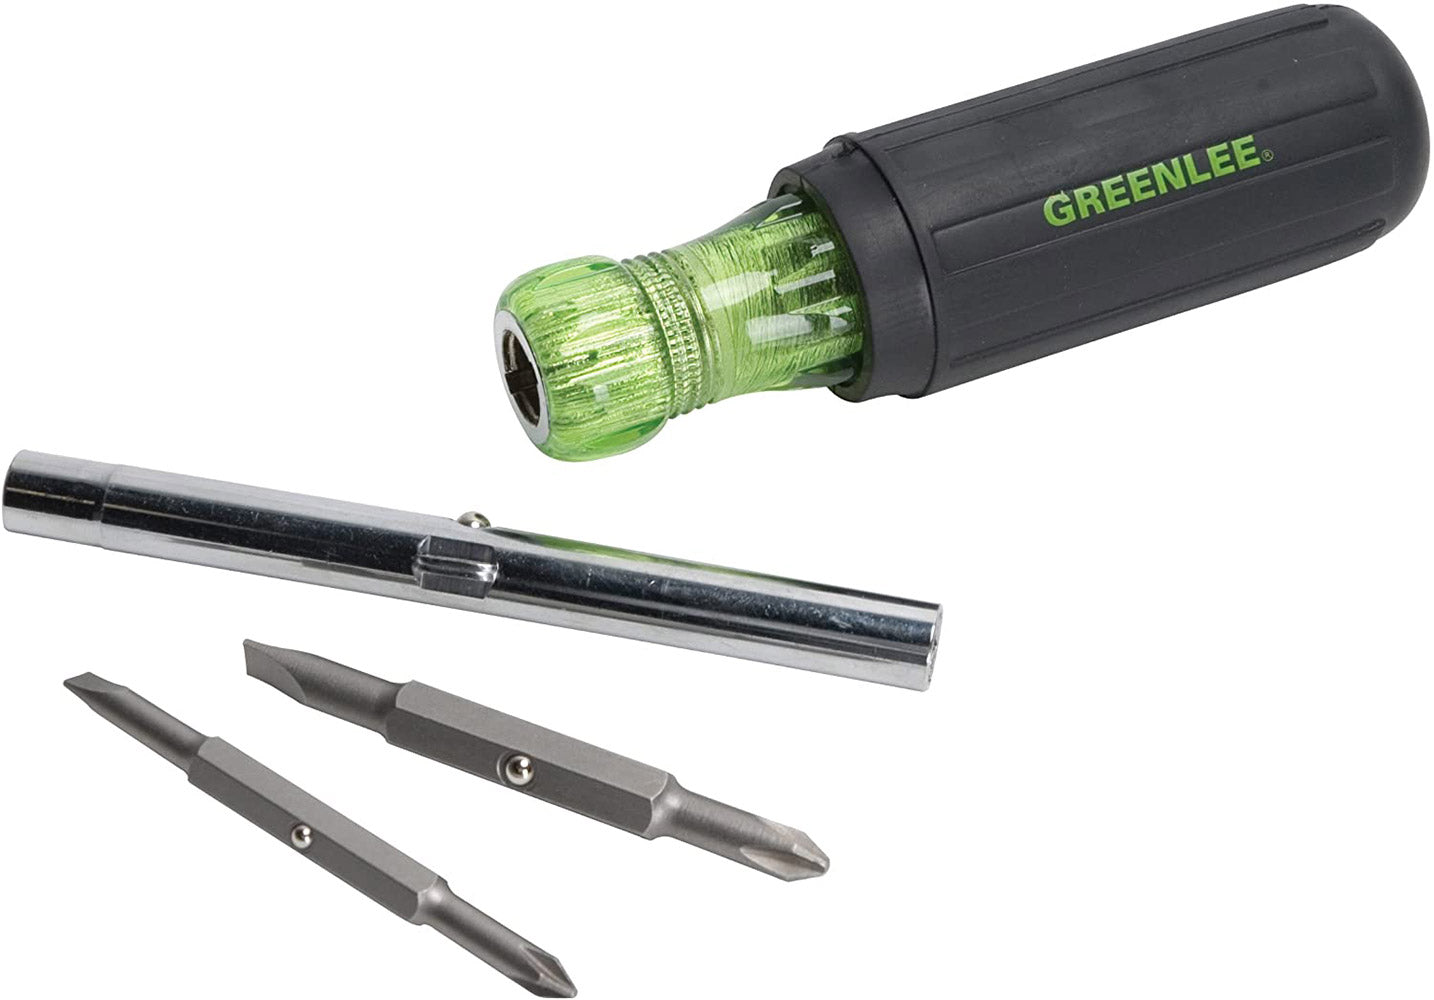 Greenlee 0153-42C 6-In-1 Multi-Tool